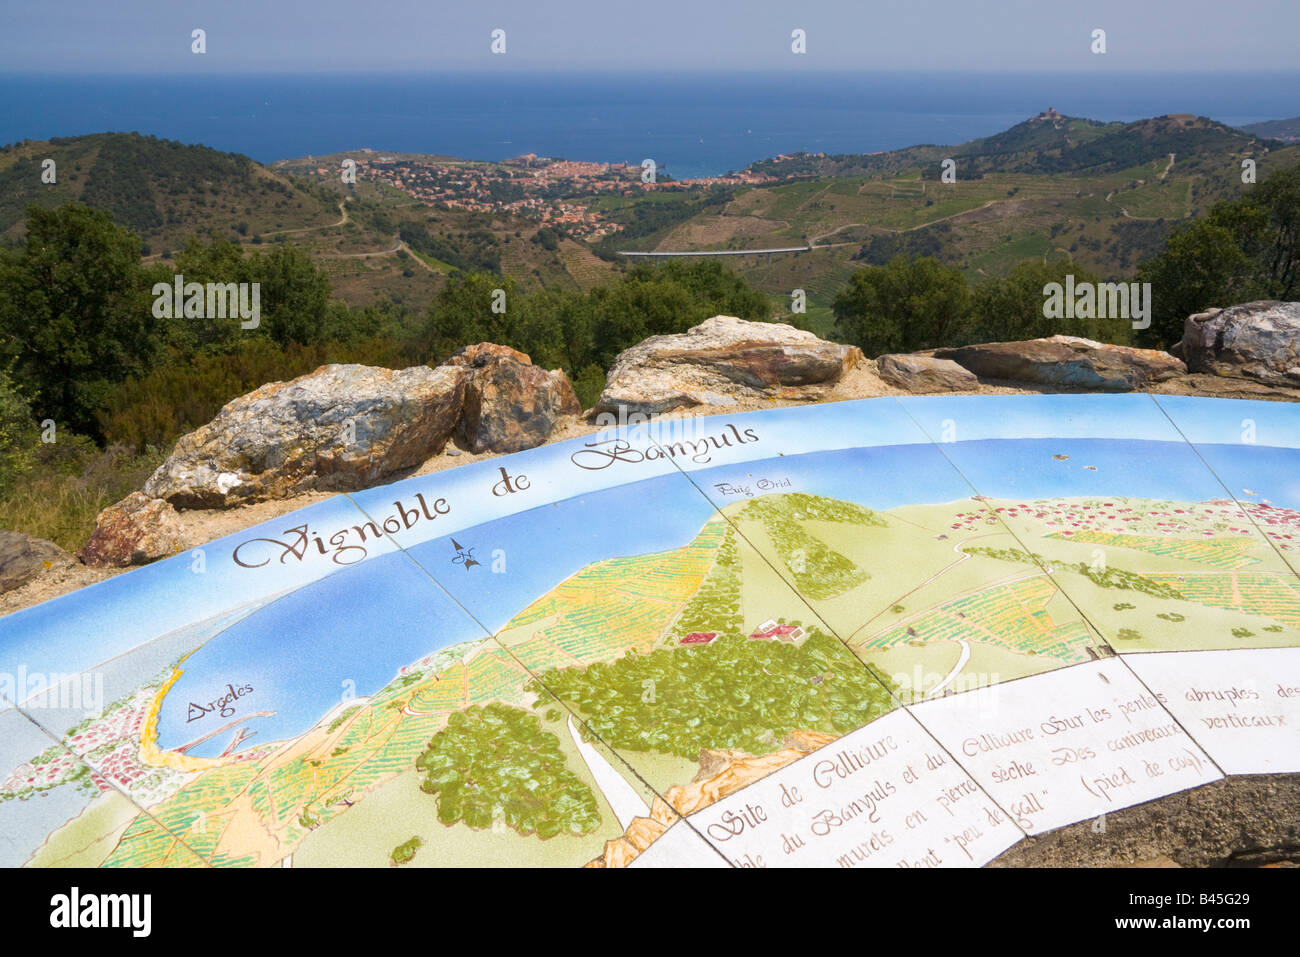 Une carte peinte à une table d'orientation fournit des informations sur les vignobles dans l'arrière pays de la Côte Vermeille / Sud de France Banque D'Images